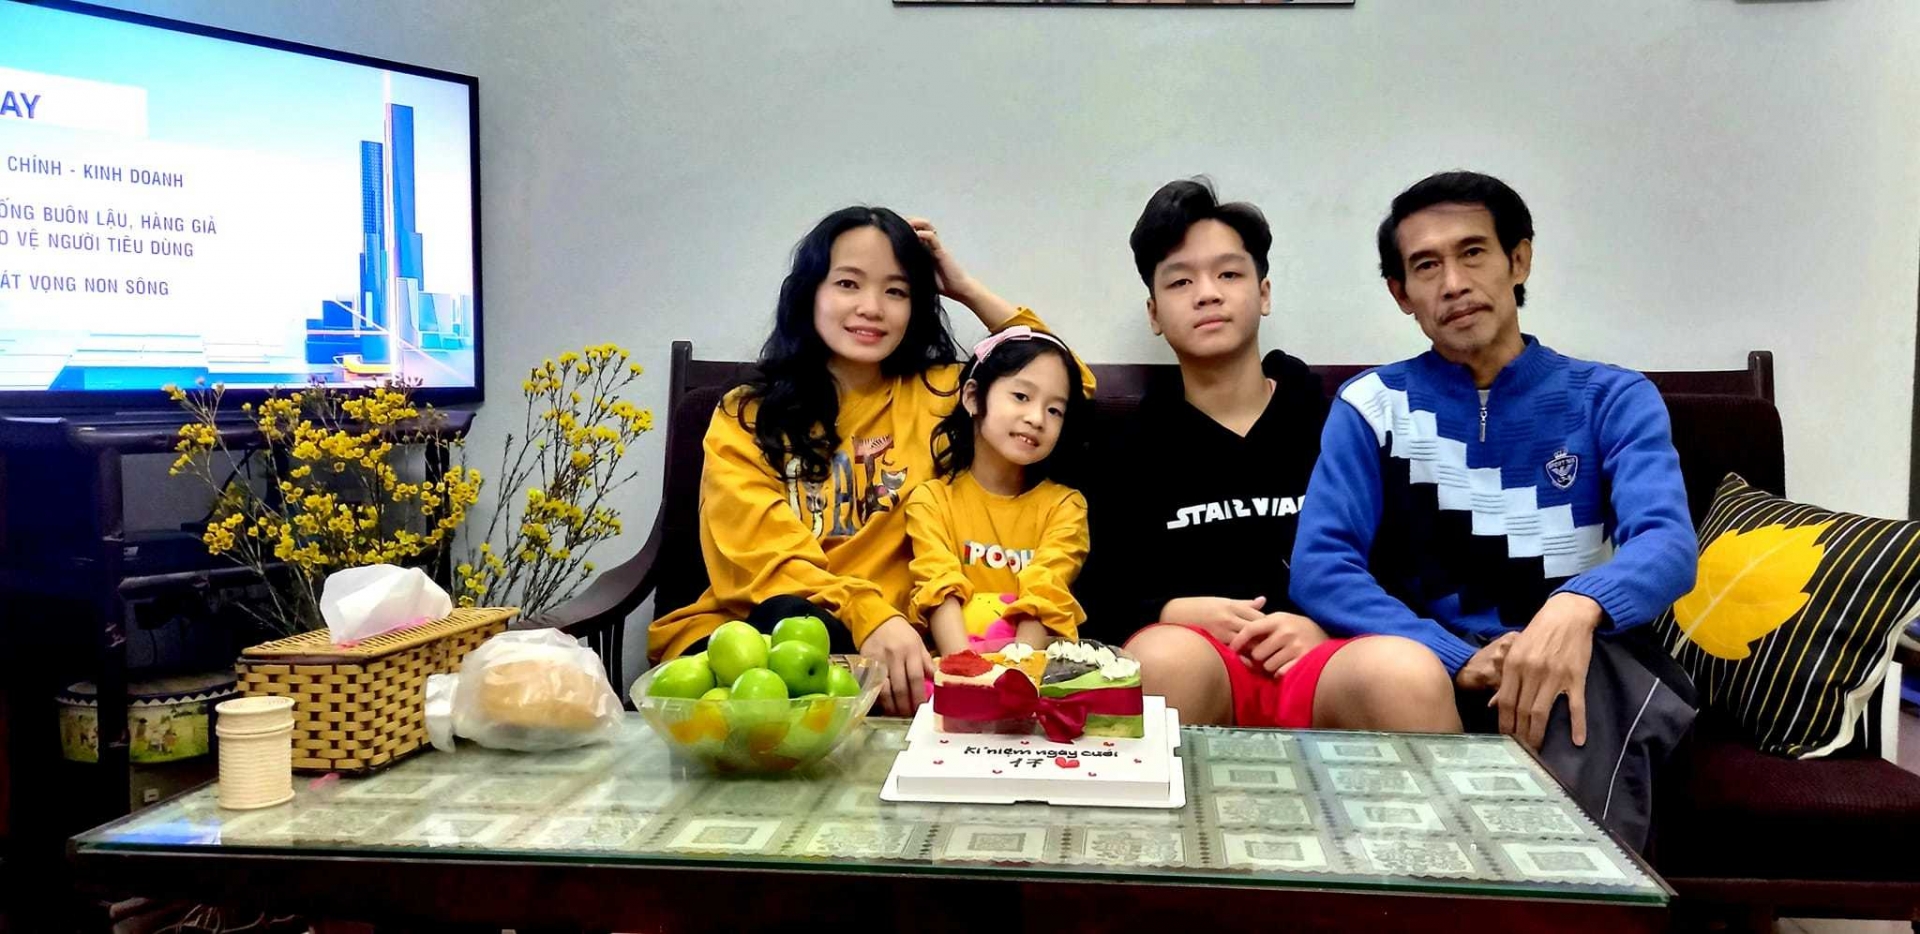 Gia đình hạnh phúc viên mãn của nghệ sĩ Phú Đôn bên vợ và 2 con